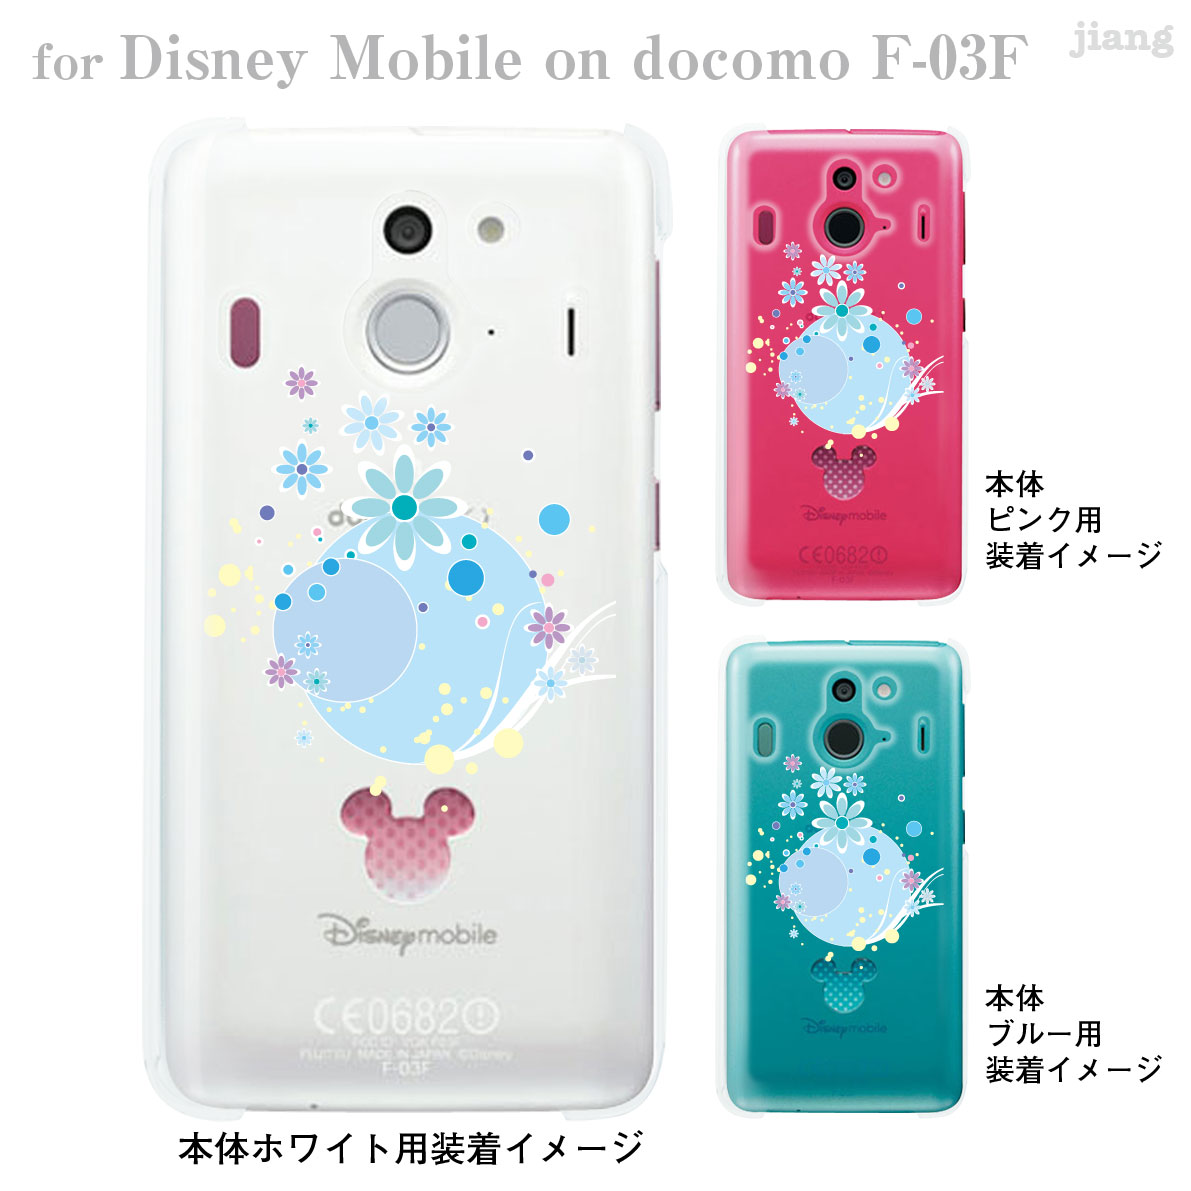 楽天市場 Disney Mobile On Docomo F 03f F03f ケース カバー スマホケース クリアケース ディズニー Clear Arts アクアフラワー 09 F03f Flo0007 Jiangプラス